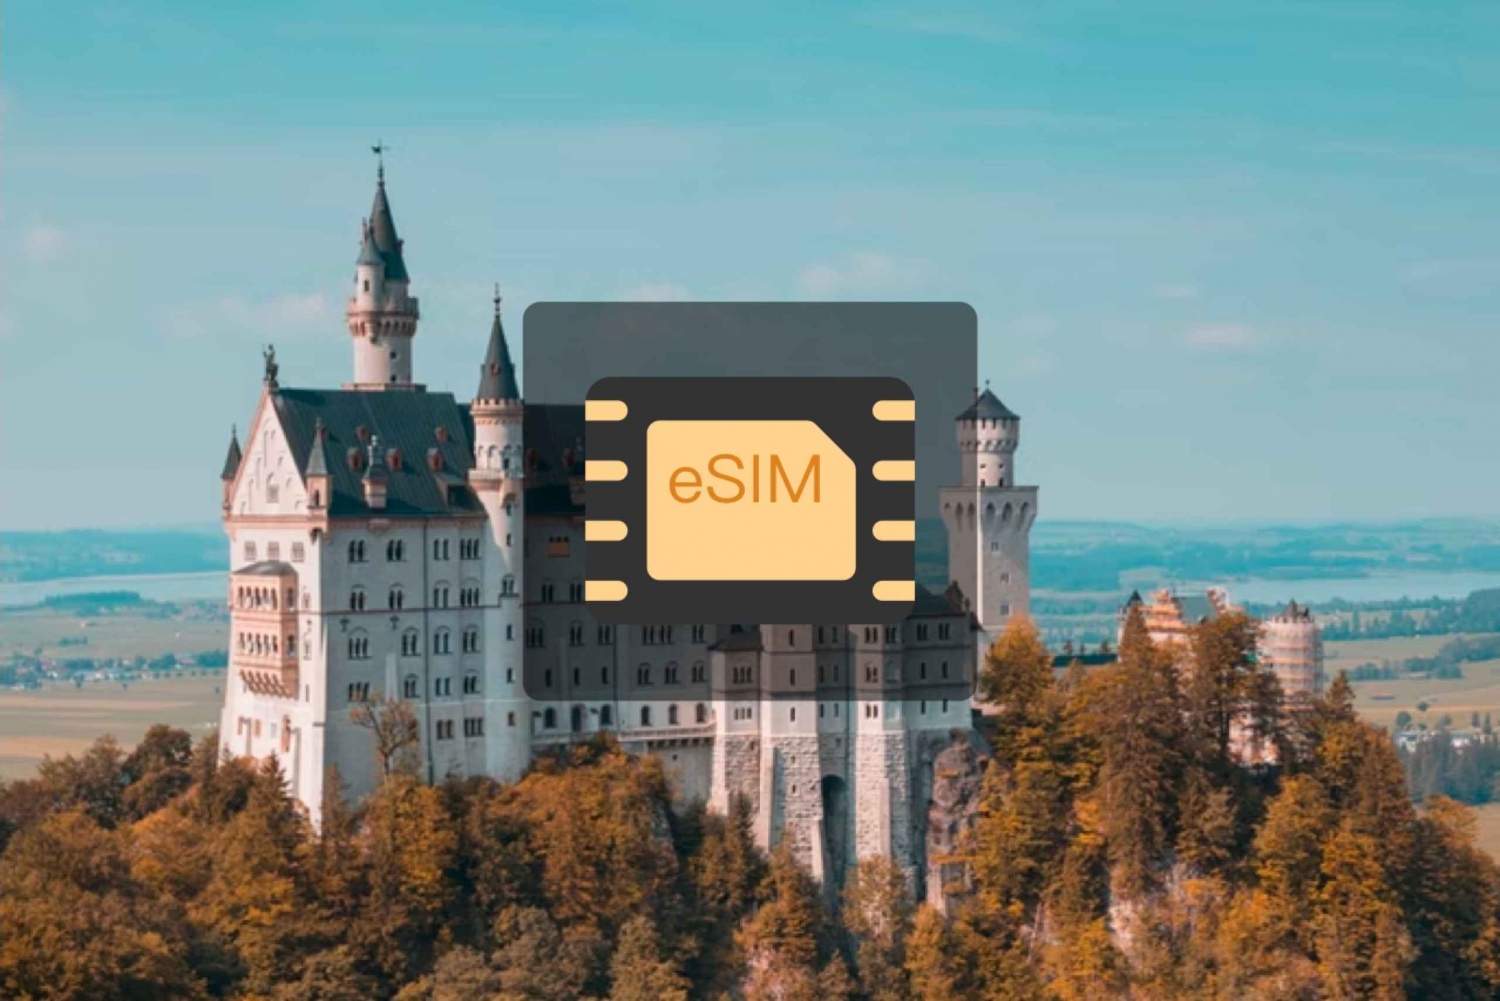 Saksa: Europe eSim Mobile Data Plan